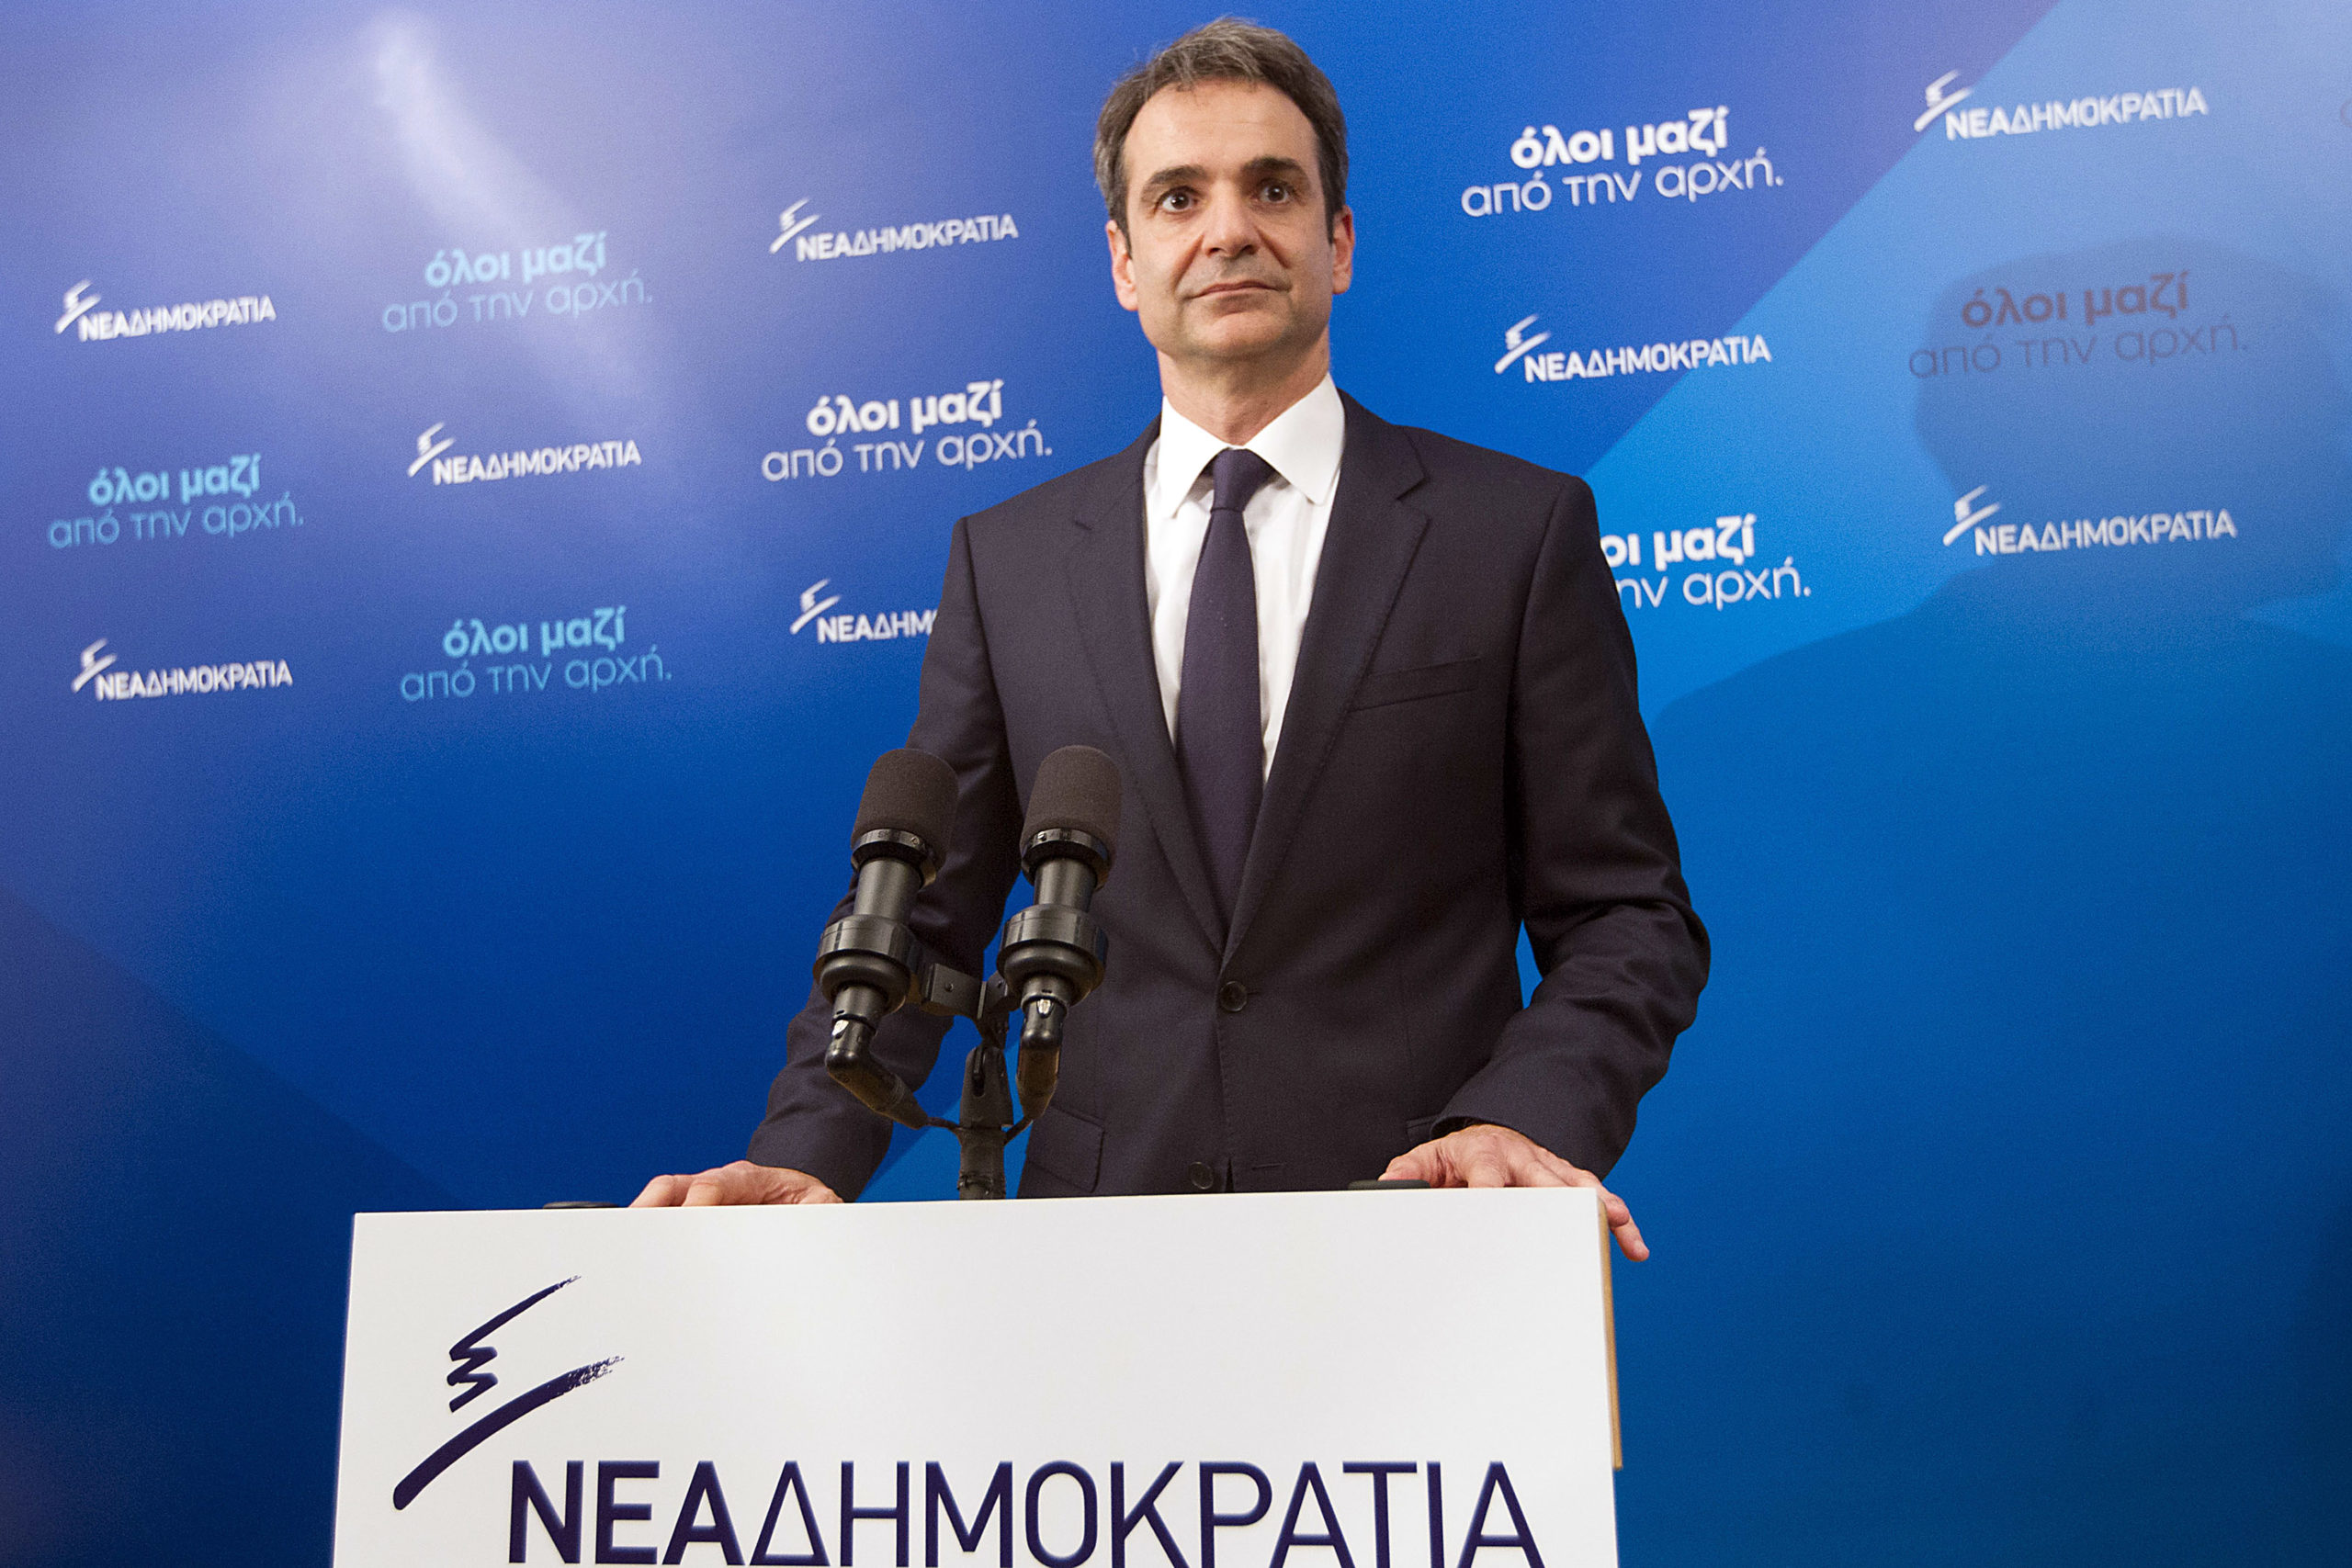 Ο Κυριάκος Μητσοτάκης νέος πρόεδρος της ΝΔ – Η εκλογή, οι δηλώσεις και η επόμενη ημέρα